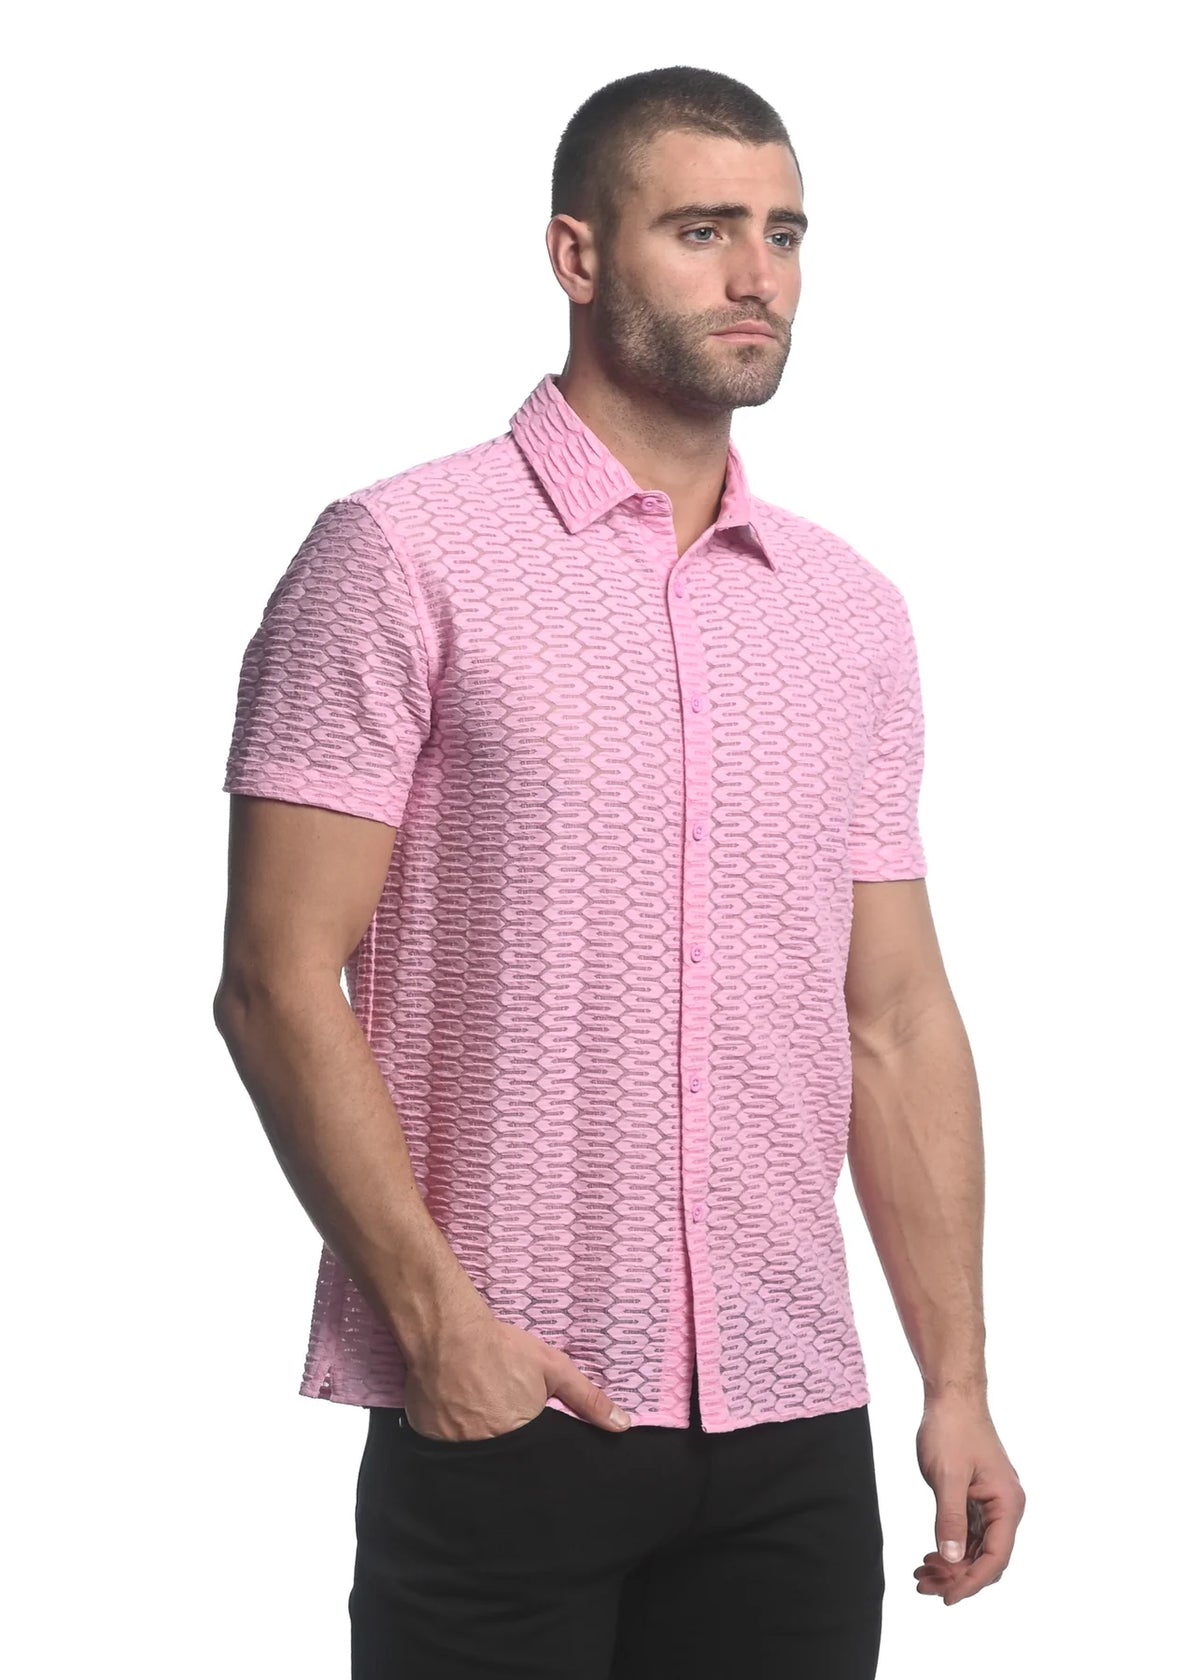 Stretch Knit Lace Gossamer Shirt (Dusty Pink)